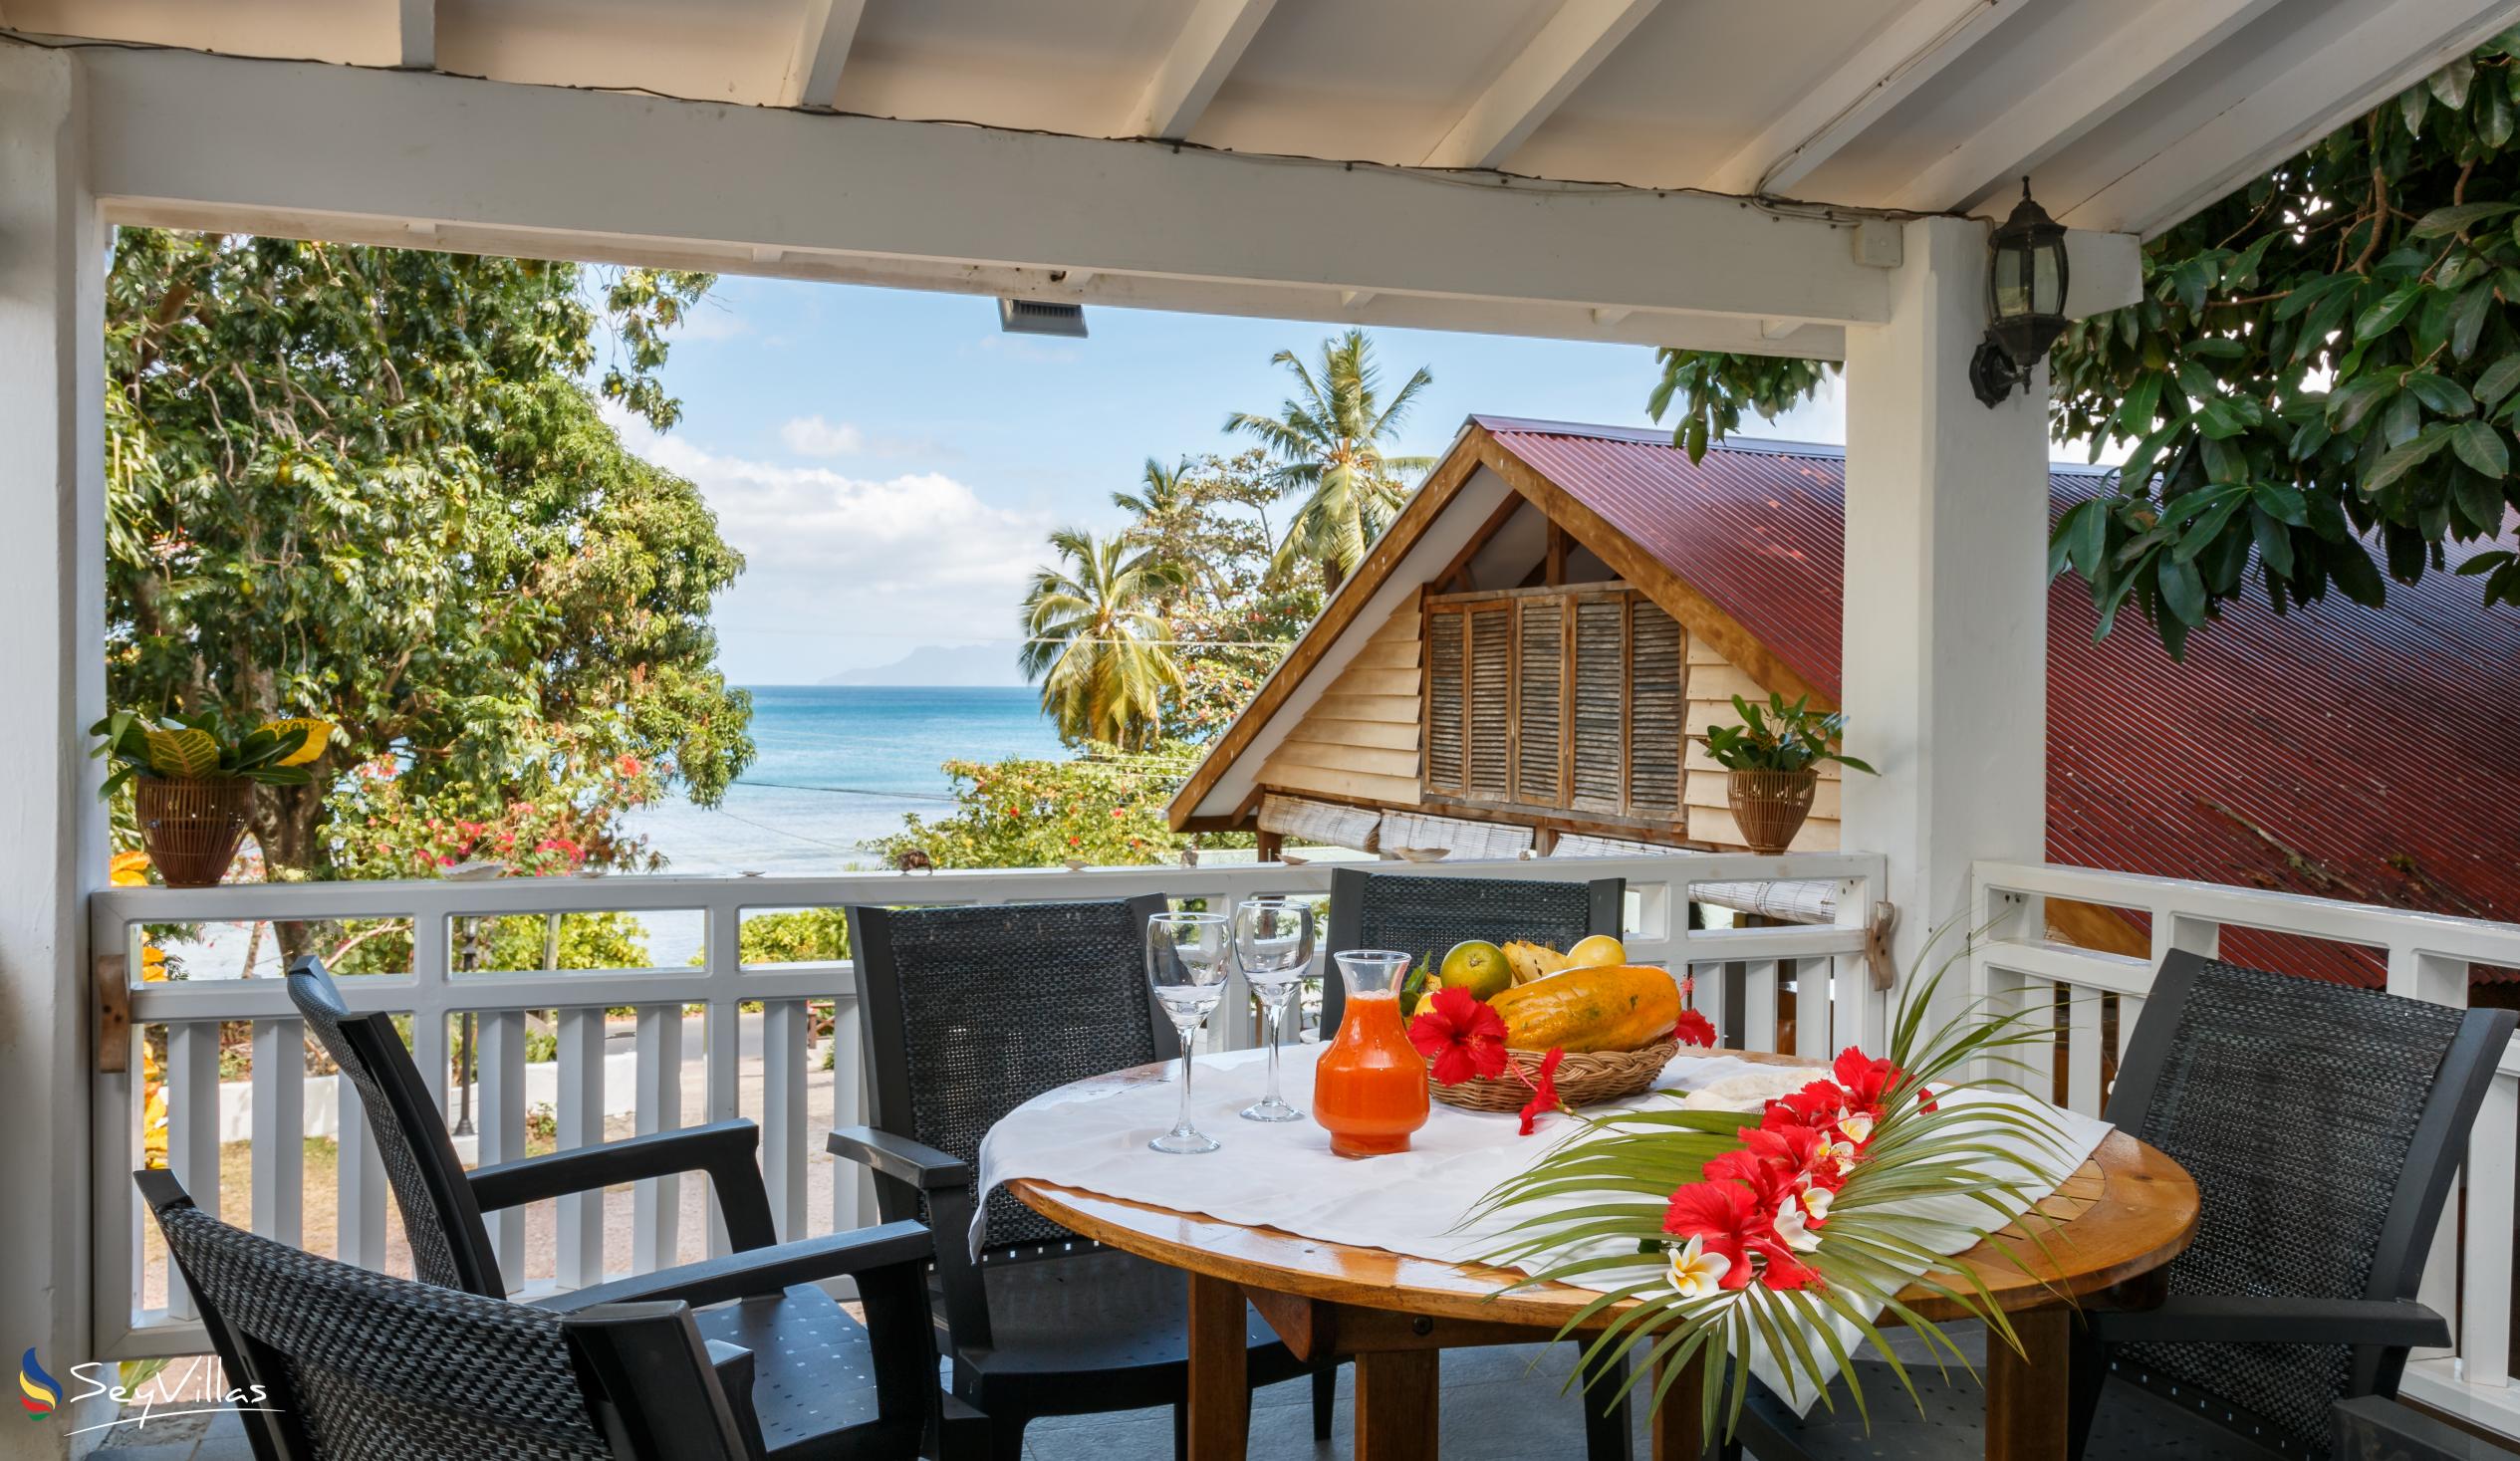 Foto 39: The Beach House (Chateau Martha) - Maison de vacances avec 2 chambres à coucher - Mahé (Seychelles)